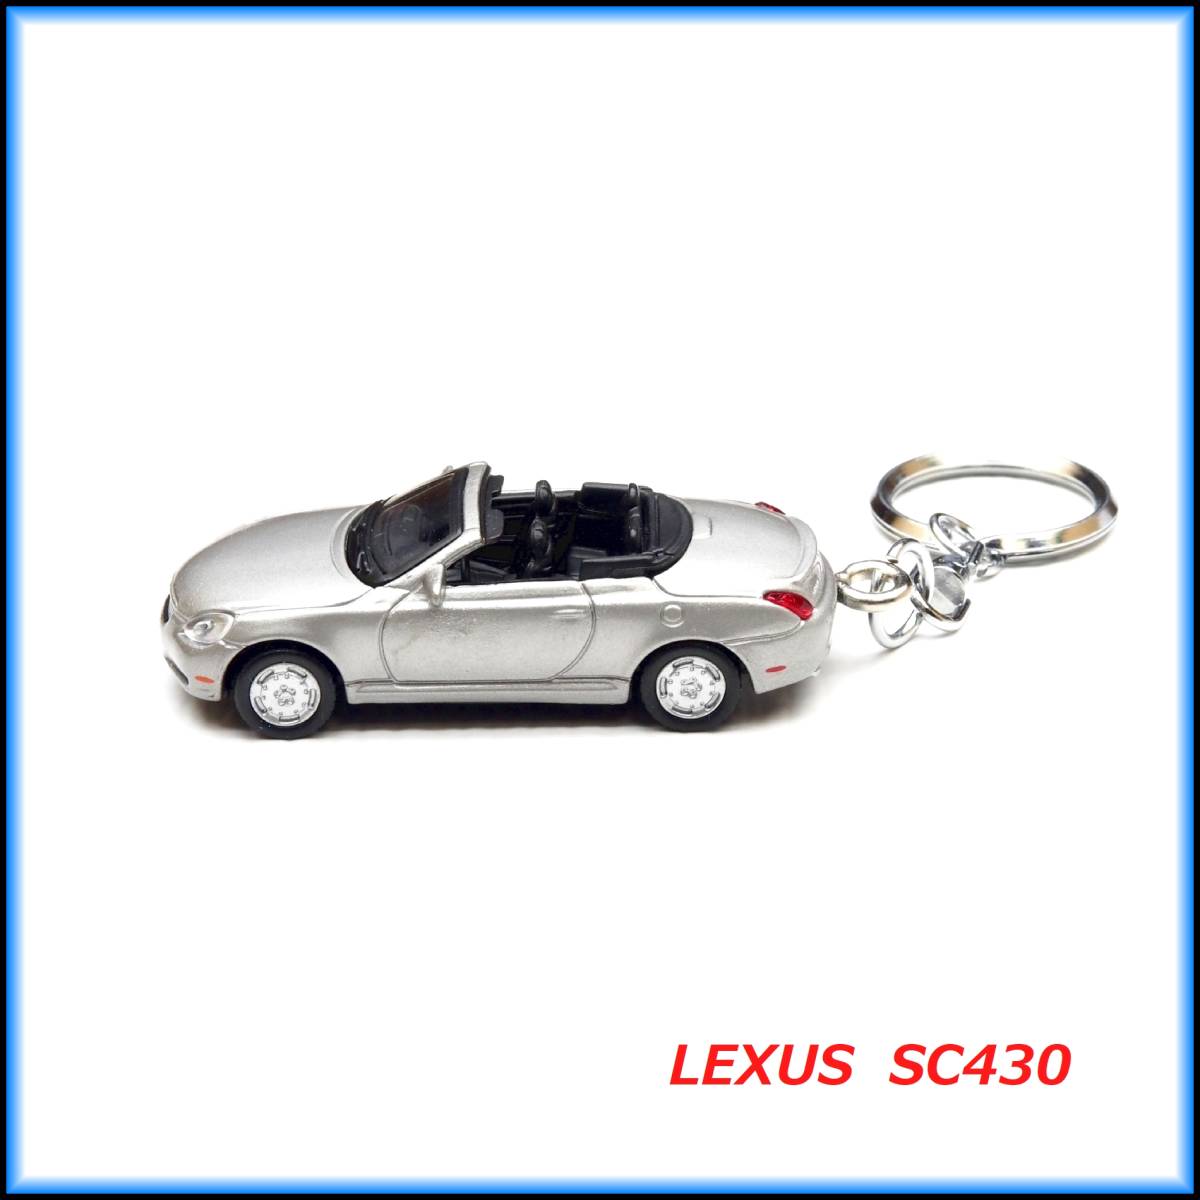 レクサス SC430 ミニカー ストラップ キーホルダー マフラー ホイール シート グリル スポイラー ハンドル BBS 車高調 トヨタ ソアラ 40系_画像4